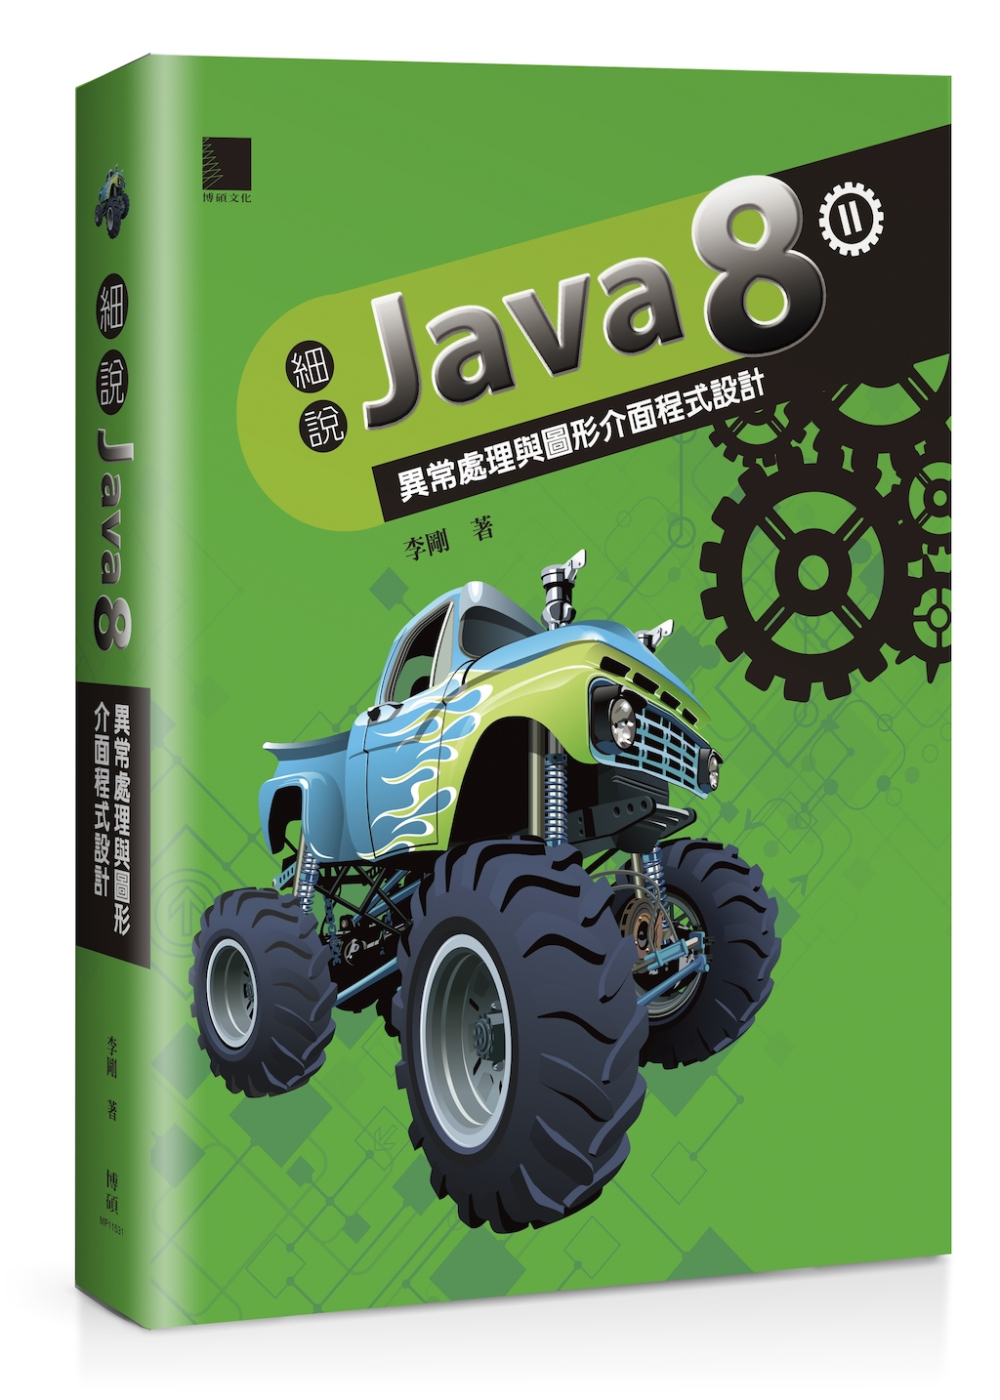 細說Java 8 Vol. II：異常處理與圖形介面程式設計